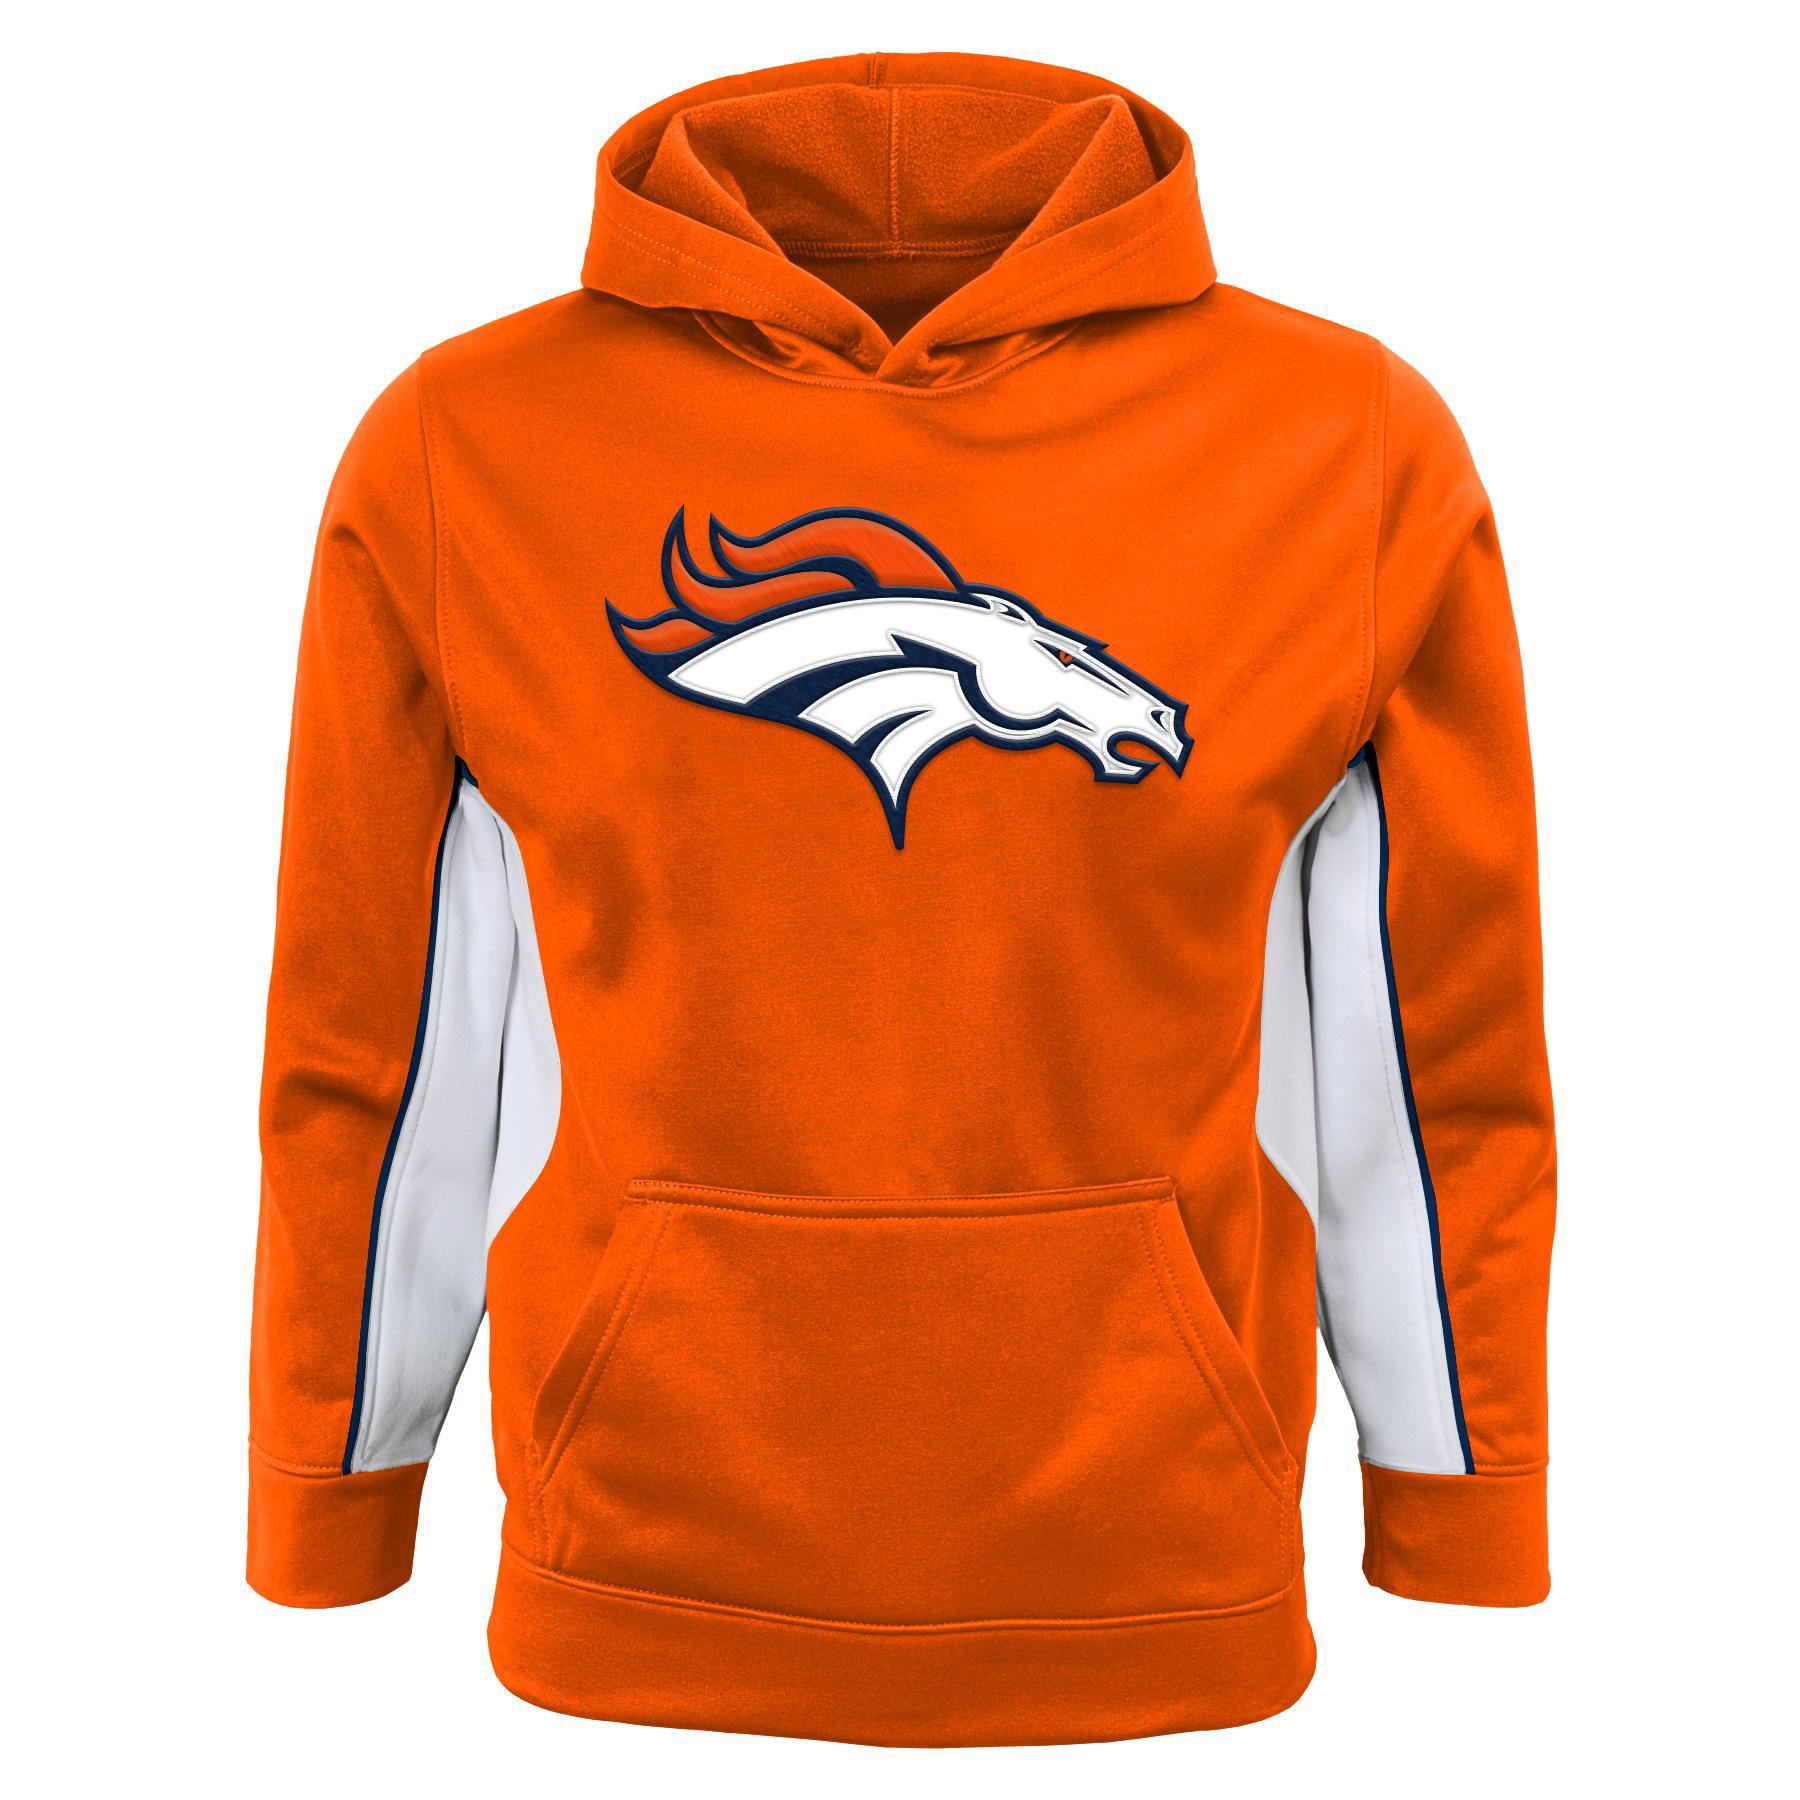 NFL Boys' Hooded Sweatshirt - Denver Broncos - Kmart